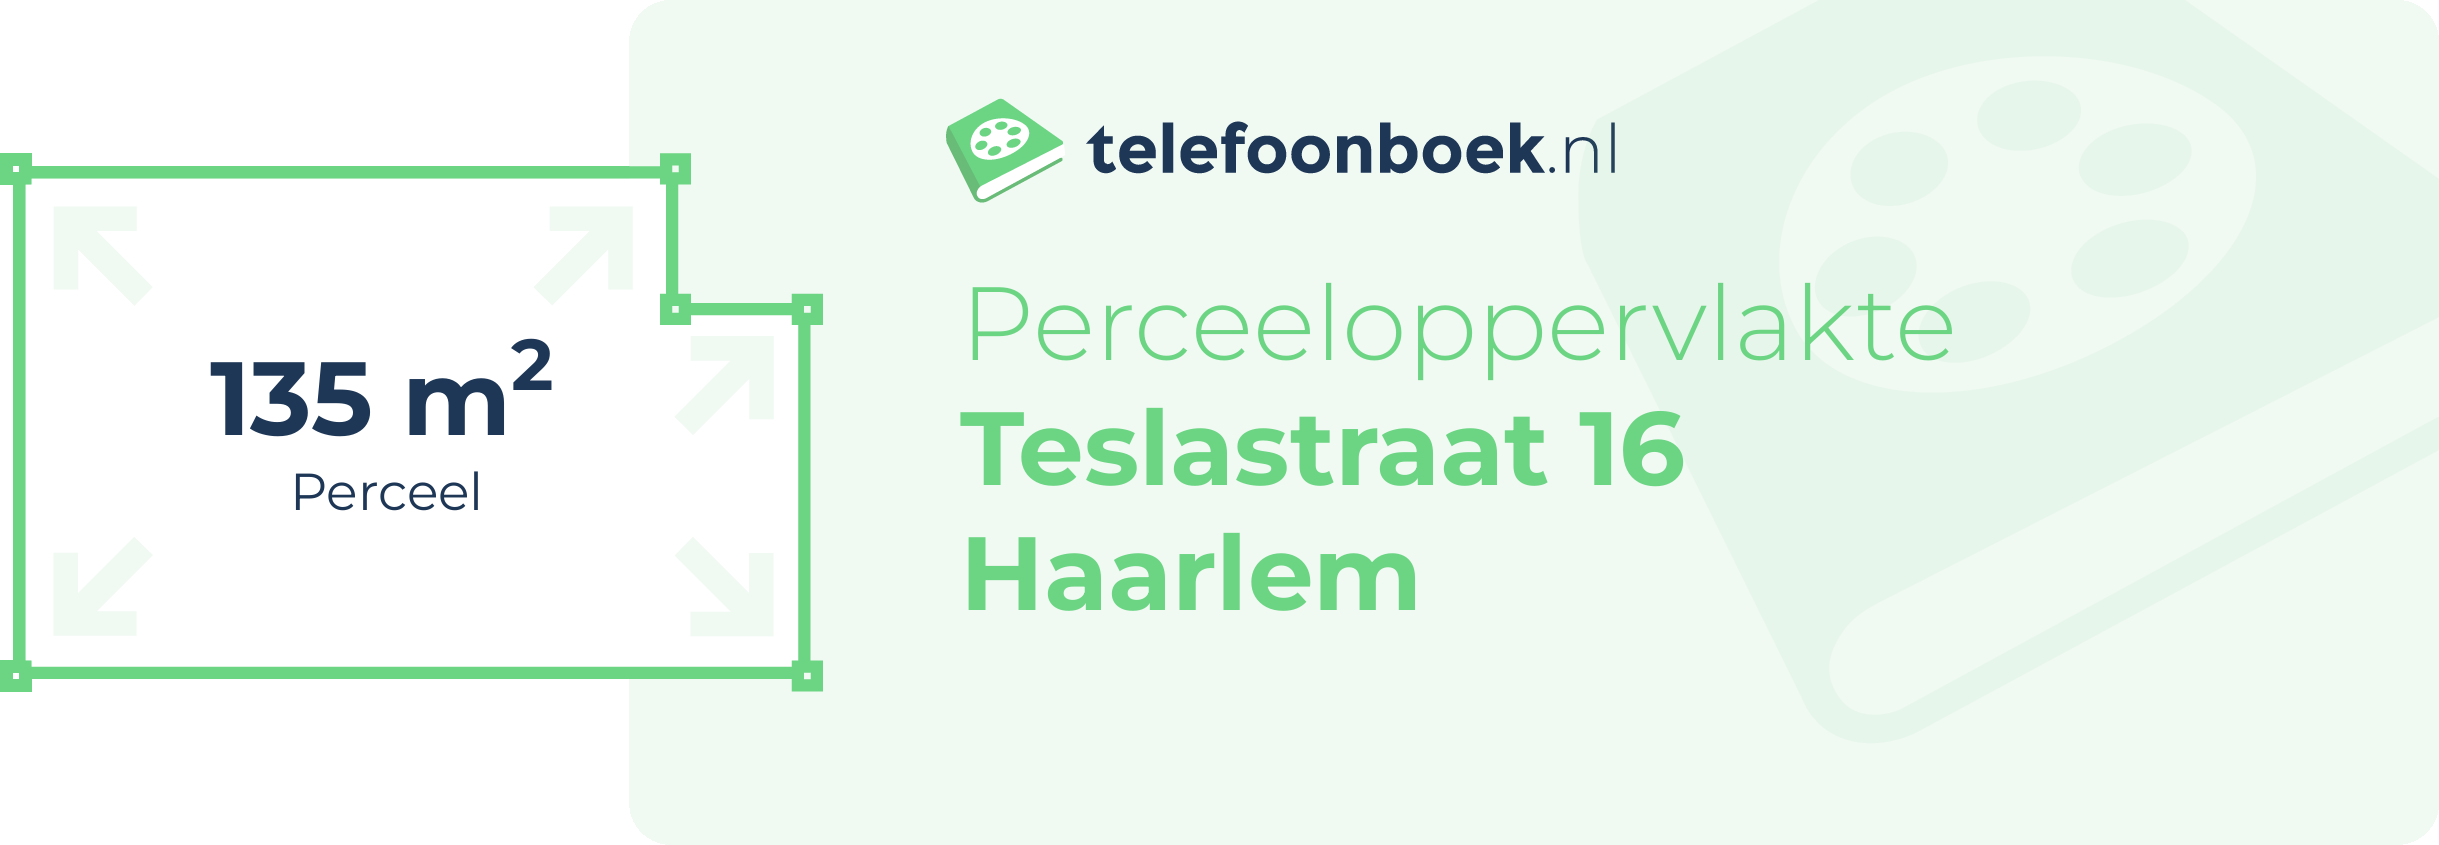 Perceeloppervlakte Teslastraat 16 Haarlem